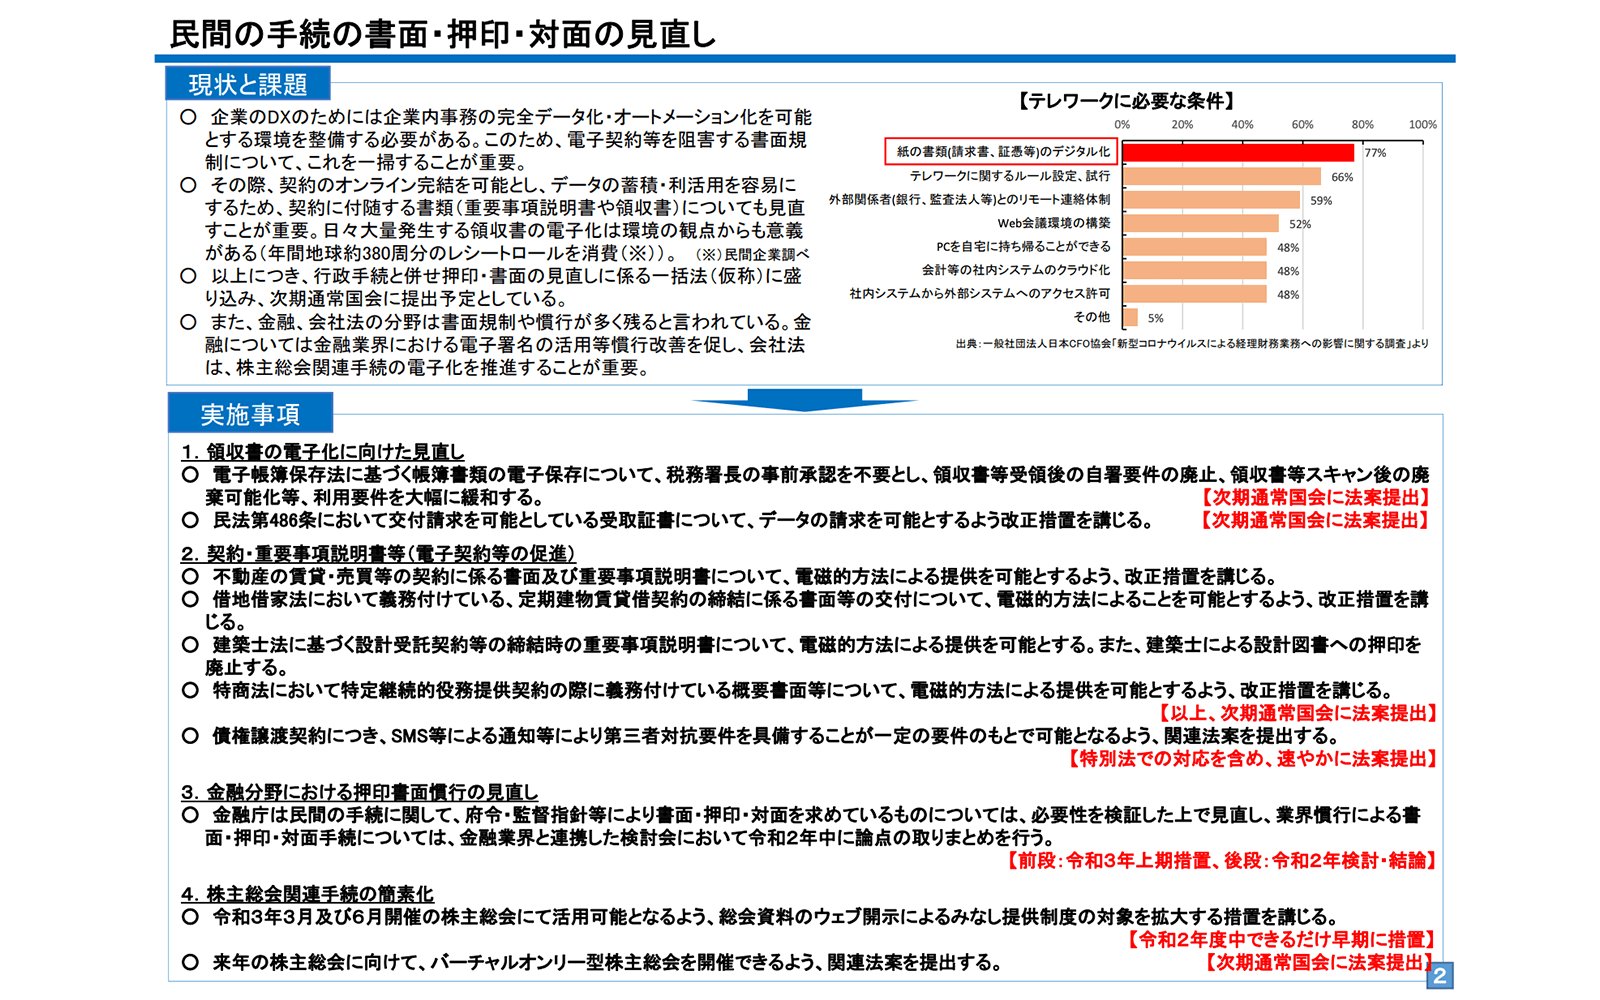 https://www8.cao.go.jp/kisei-kaikaku/kisei/publication/opinion/201222kanren.pdf 2021年1月5日最終アクセス